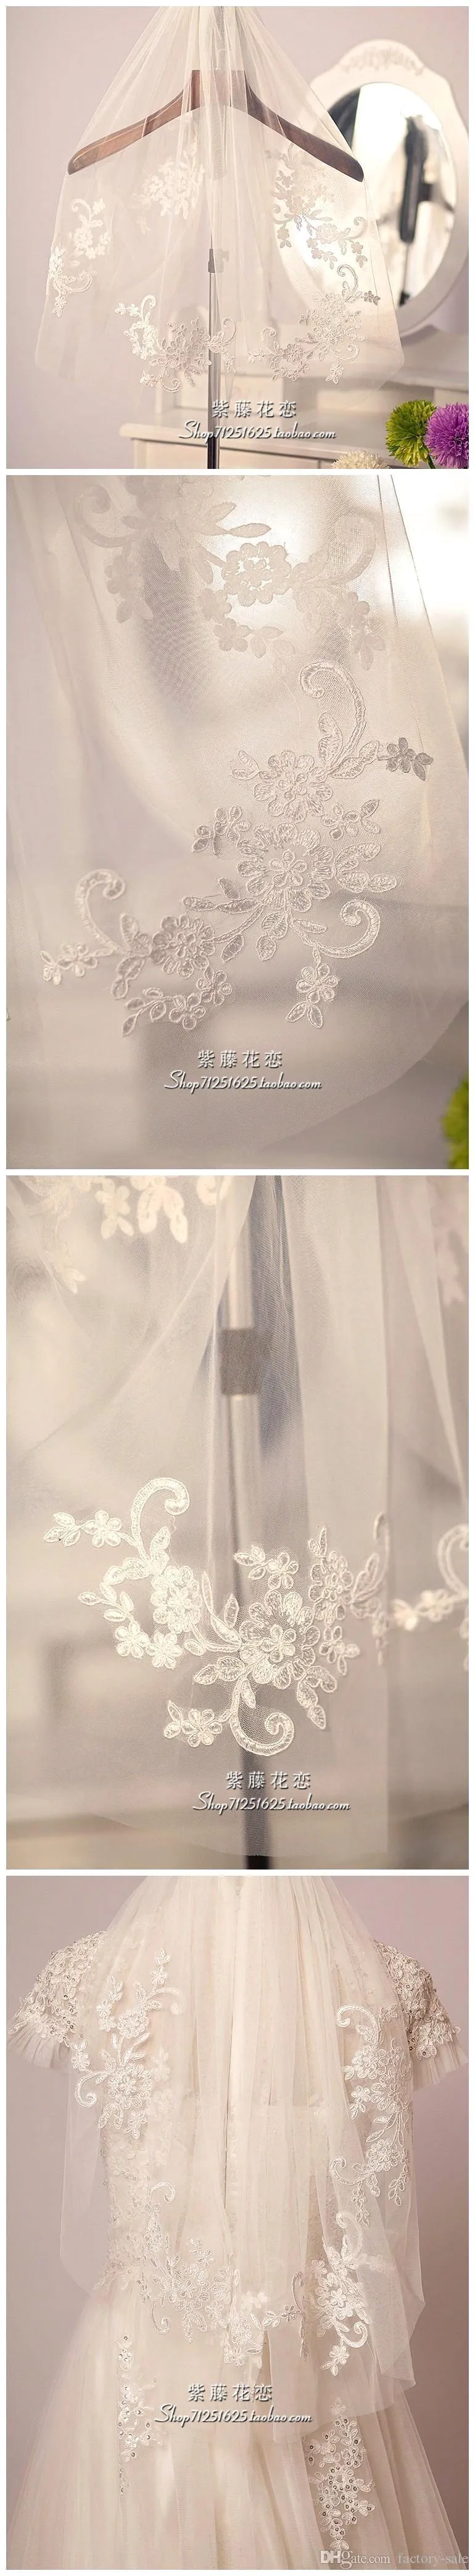 يزين رائع الرباط طول الكوع مع مشط الزفاف اكسسوارات الزفاف الحجاب cpa398 الأبيض العاج الحجاب شحن مجاني